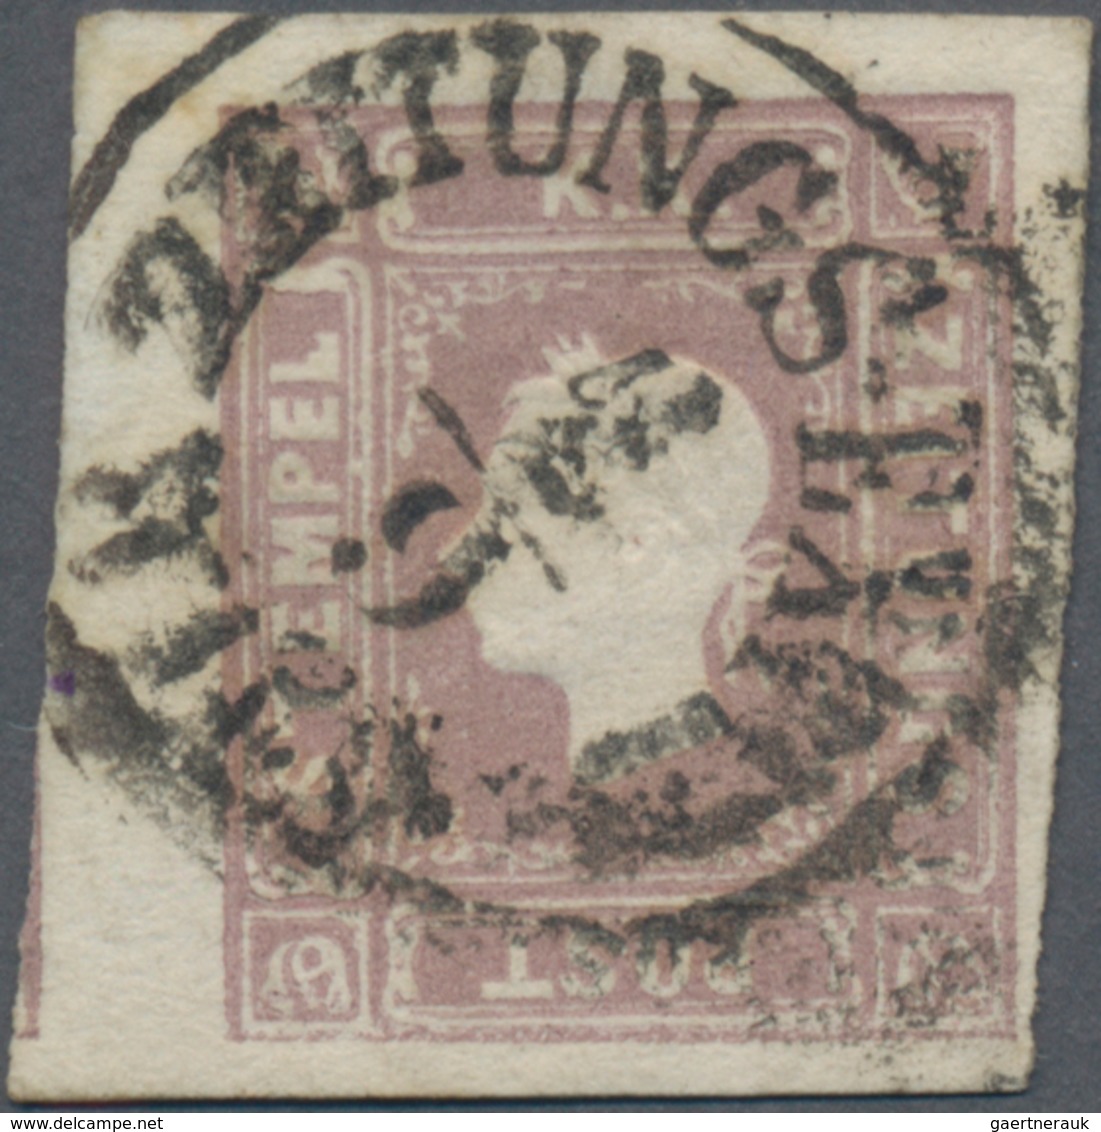 Österreich: 1858, Zeitungsmarke (1,05 Kr.) Lila, Type II Mit Schöner Kopfprägung, Kräftiger Einkreis - Used Stamps